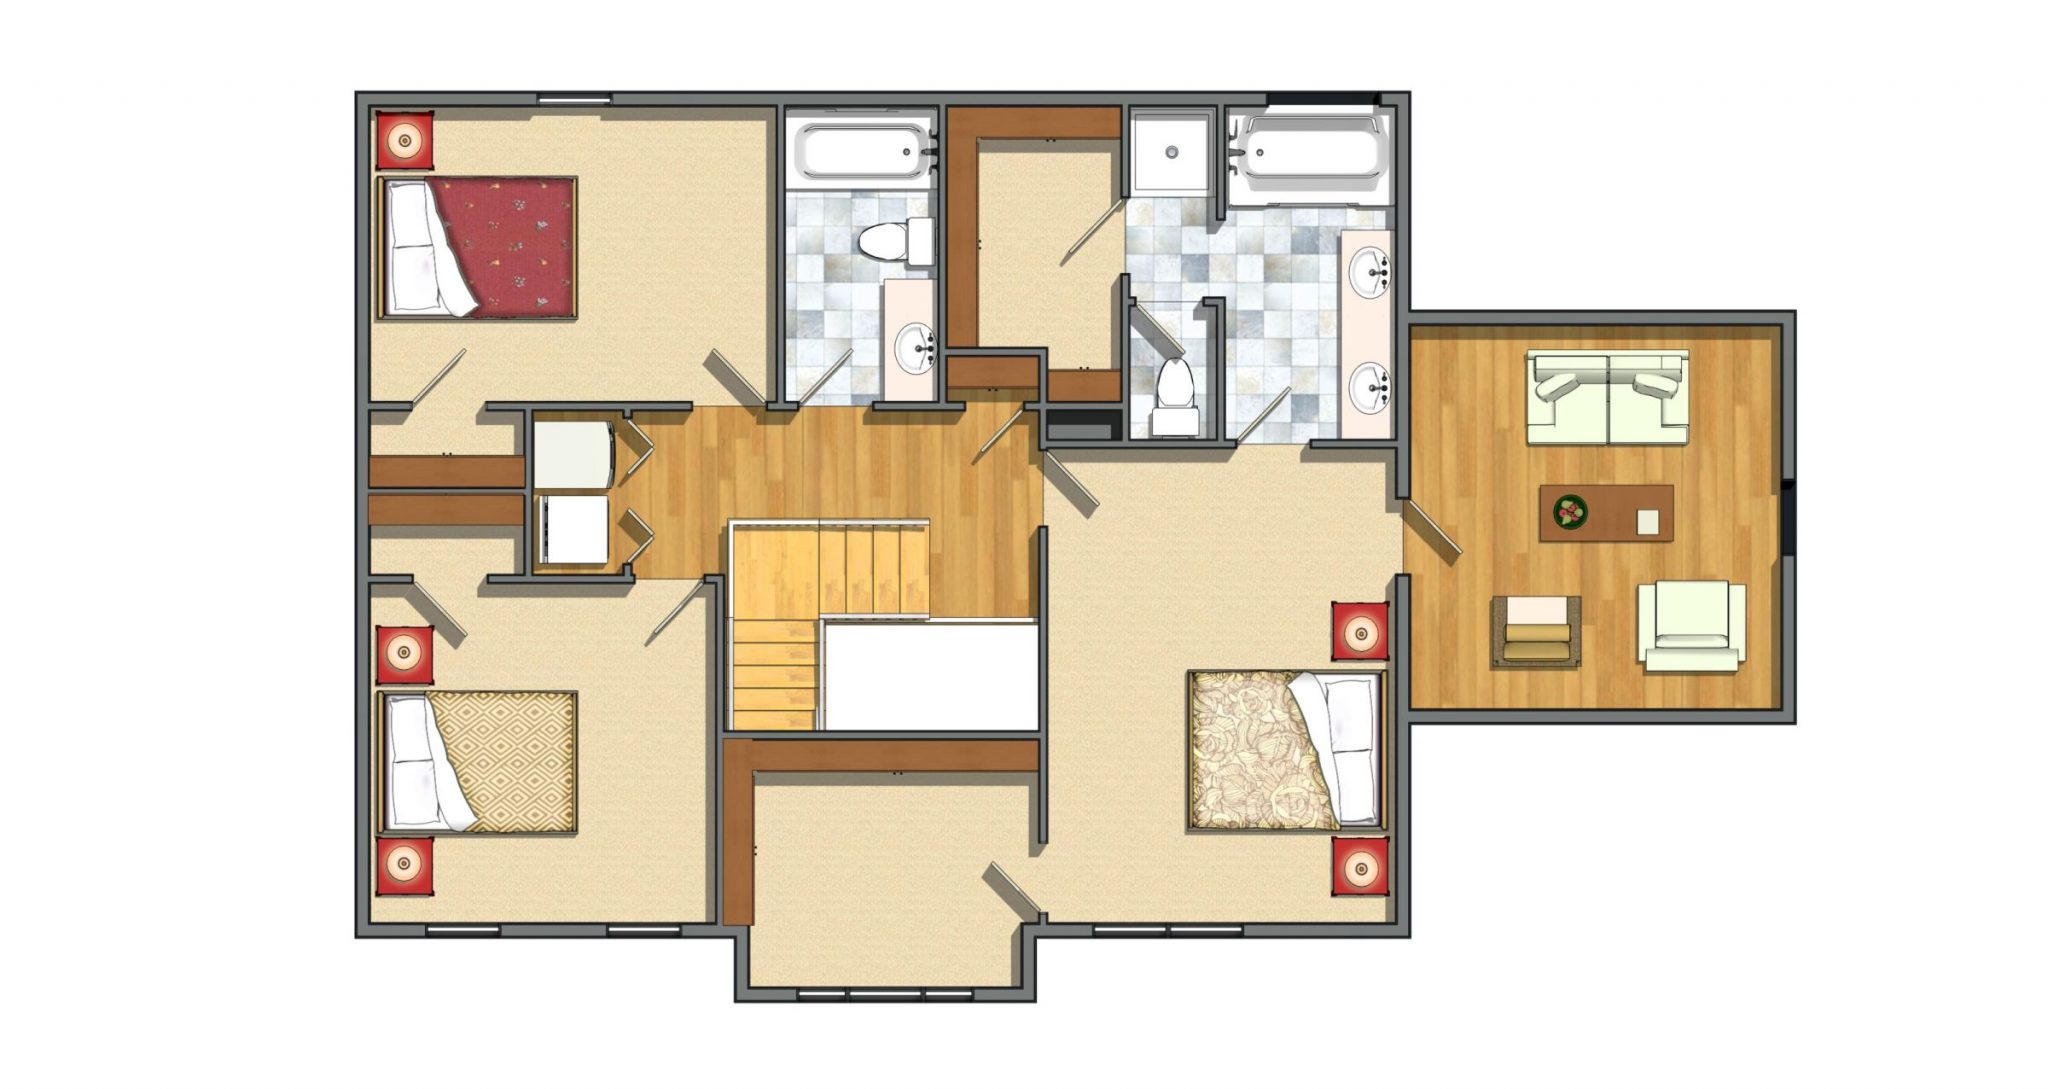 2nd Floor 3 Bedrooms